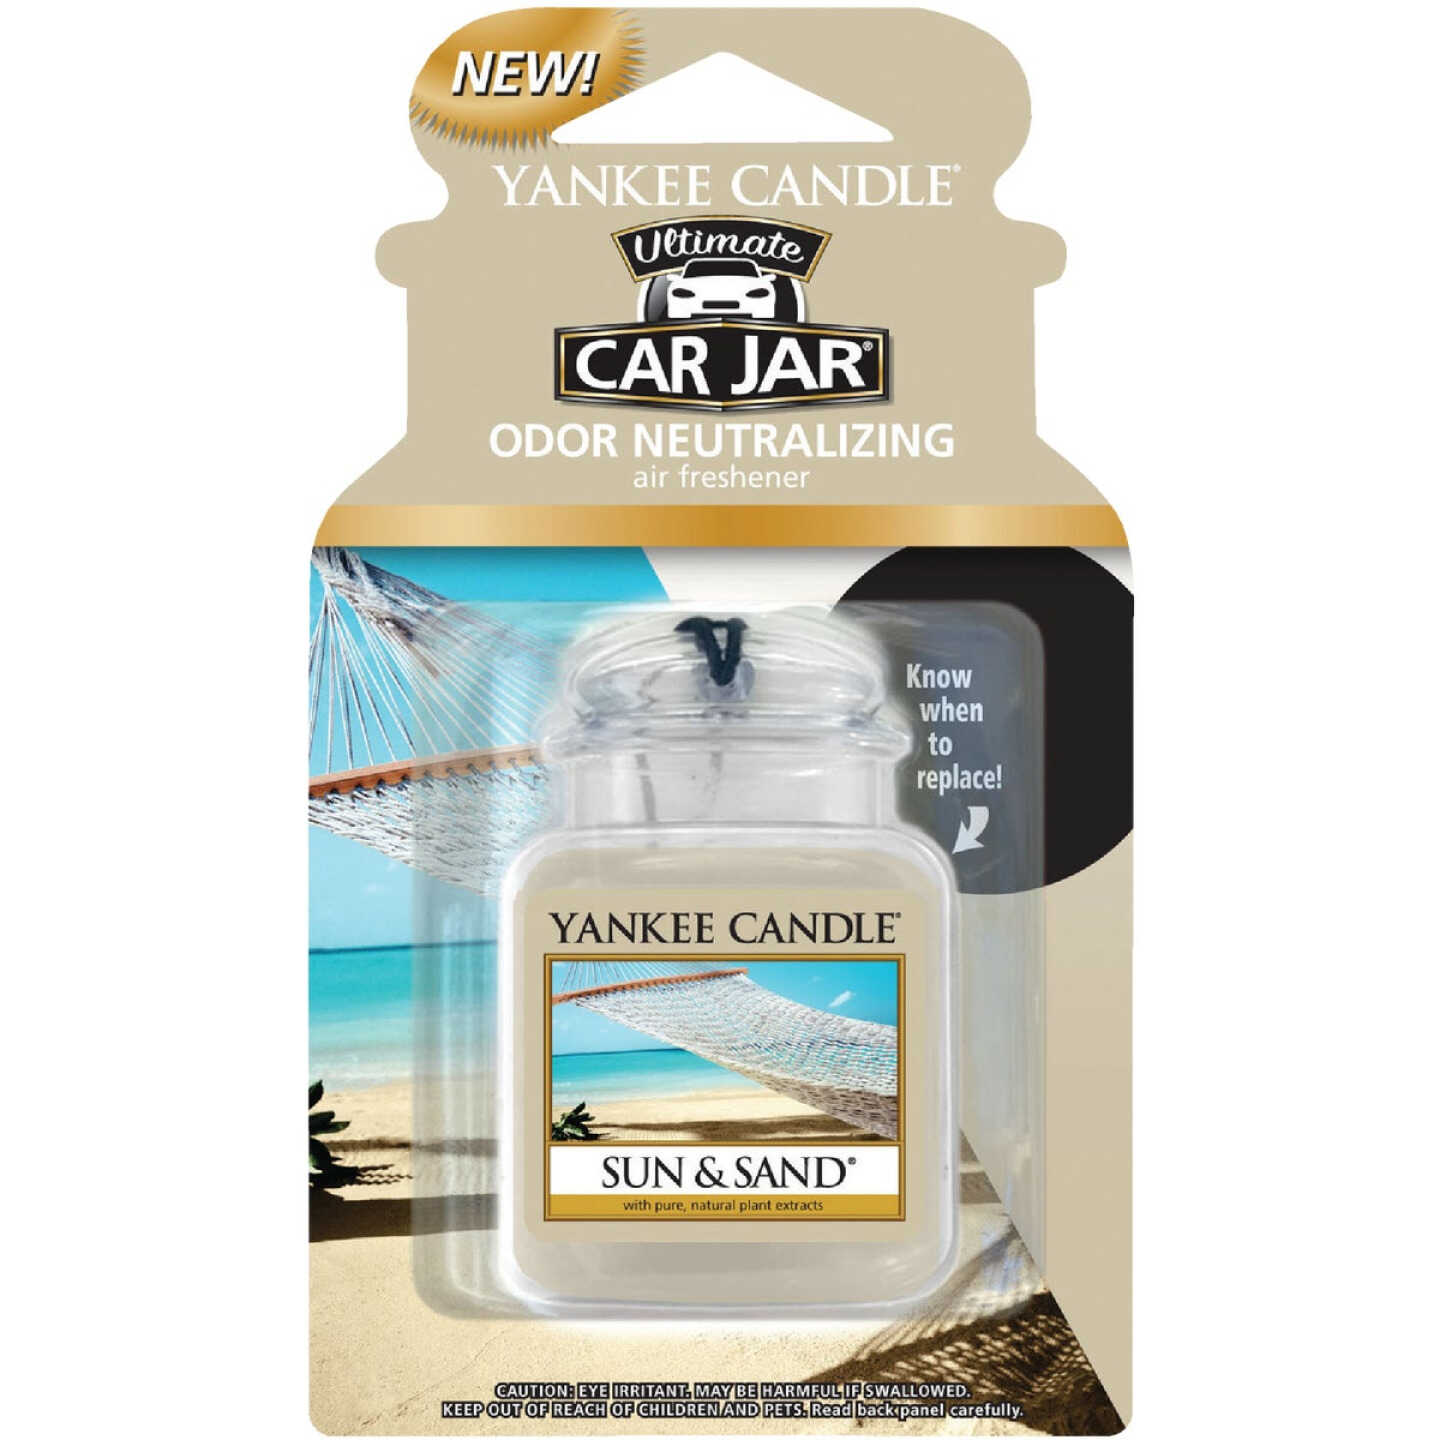 Yankee Candle Car Jar Ultimate Car Air Freshener, Sun & Sand - Anderson  Lumber